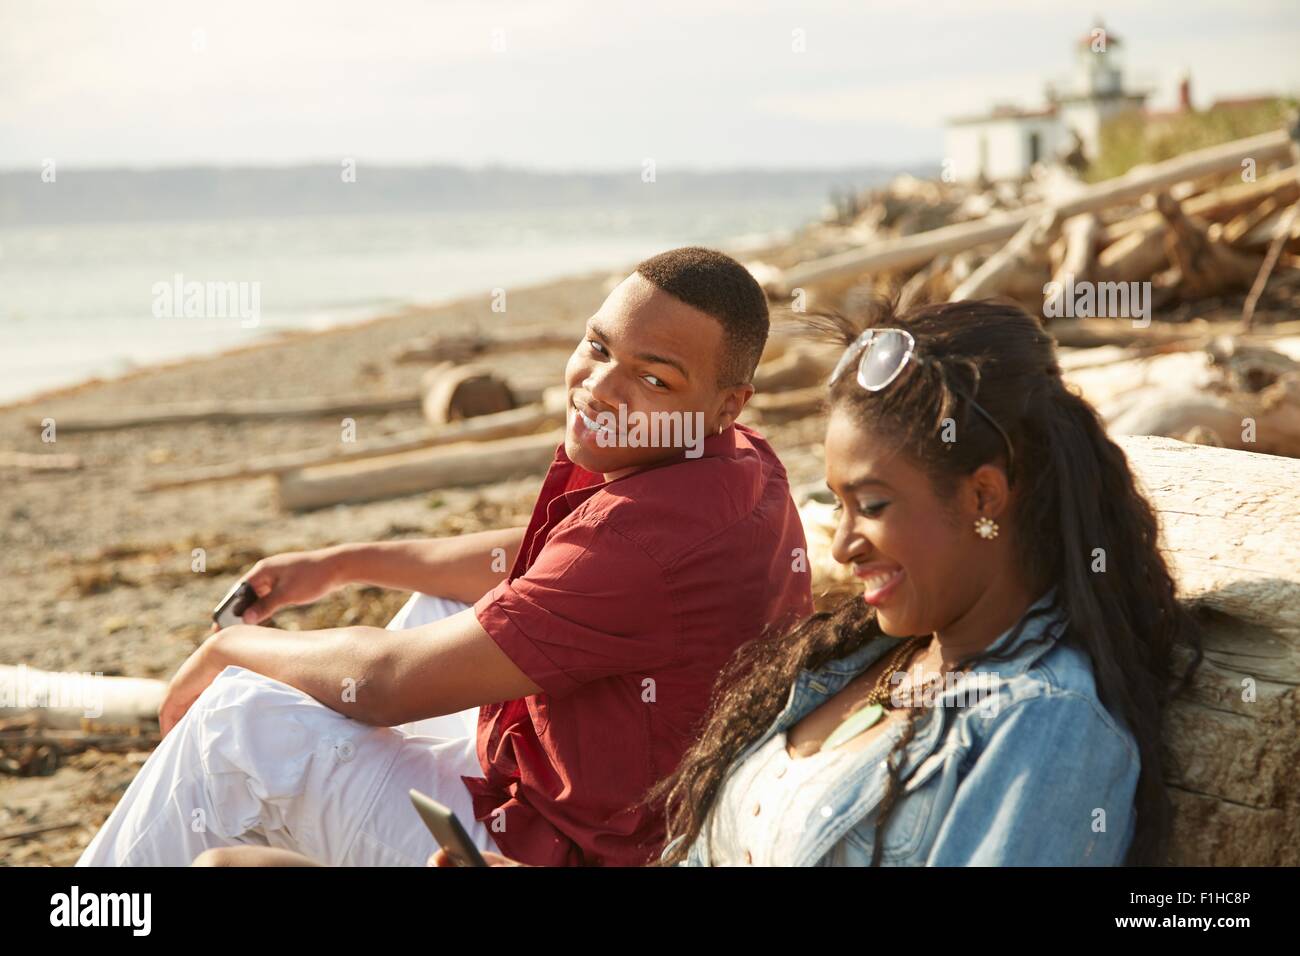 Pareja joven sentados juntos en la playa sonriente Foto de stock